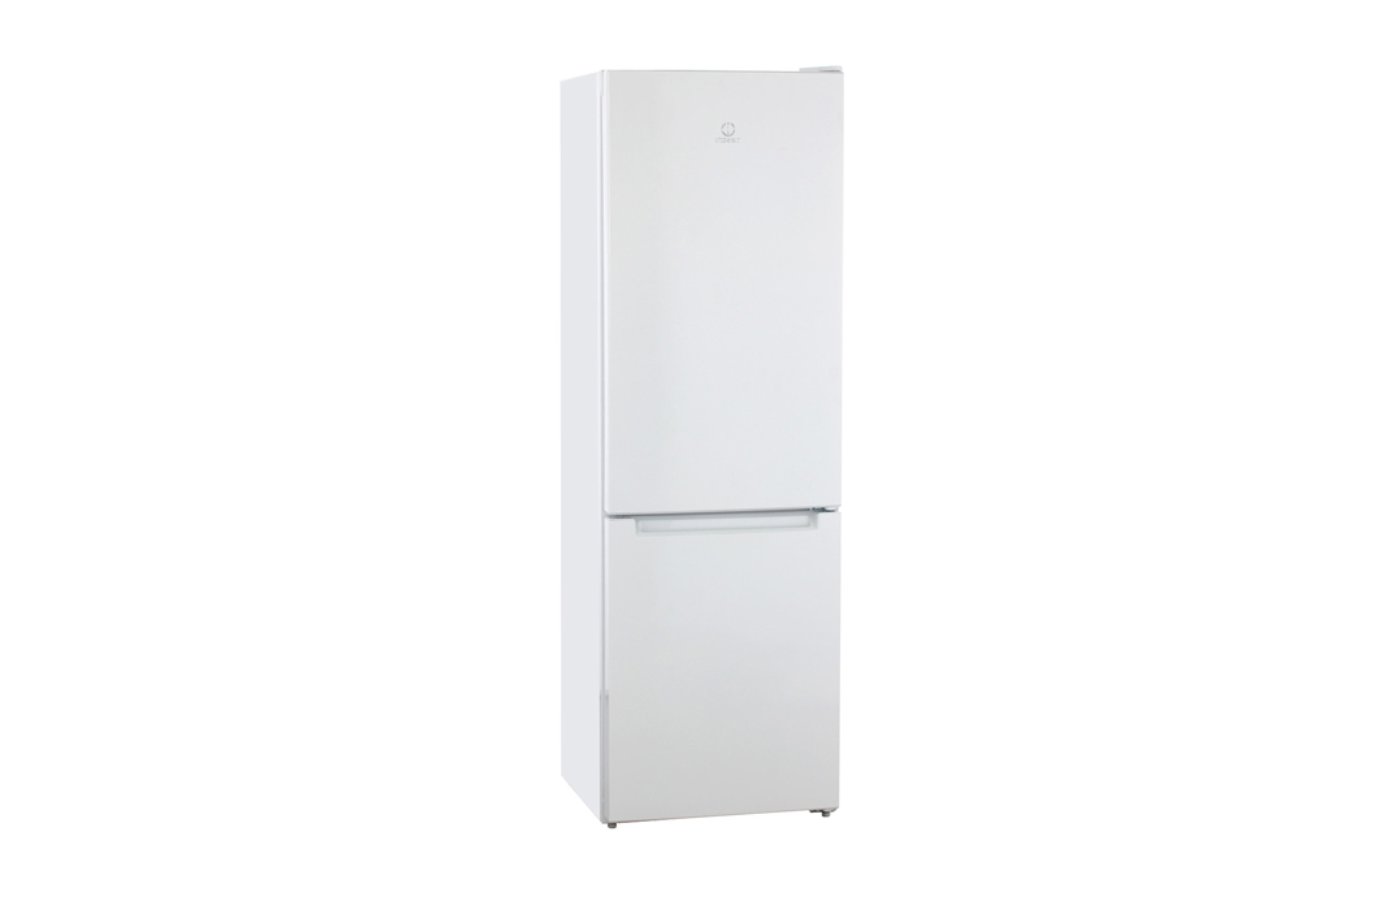 Холодильники индезит отзывы специалистов и покупателей. Холодильник двухкамерный с мощными ручками.